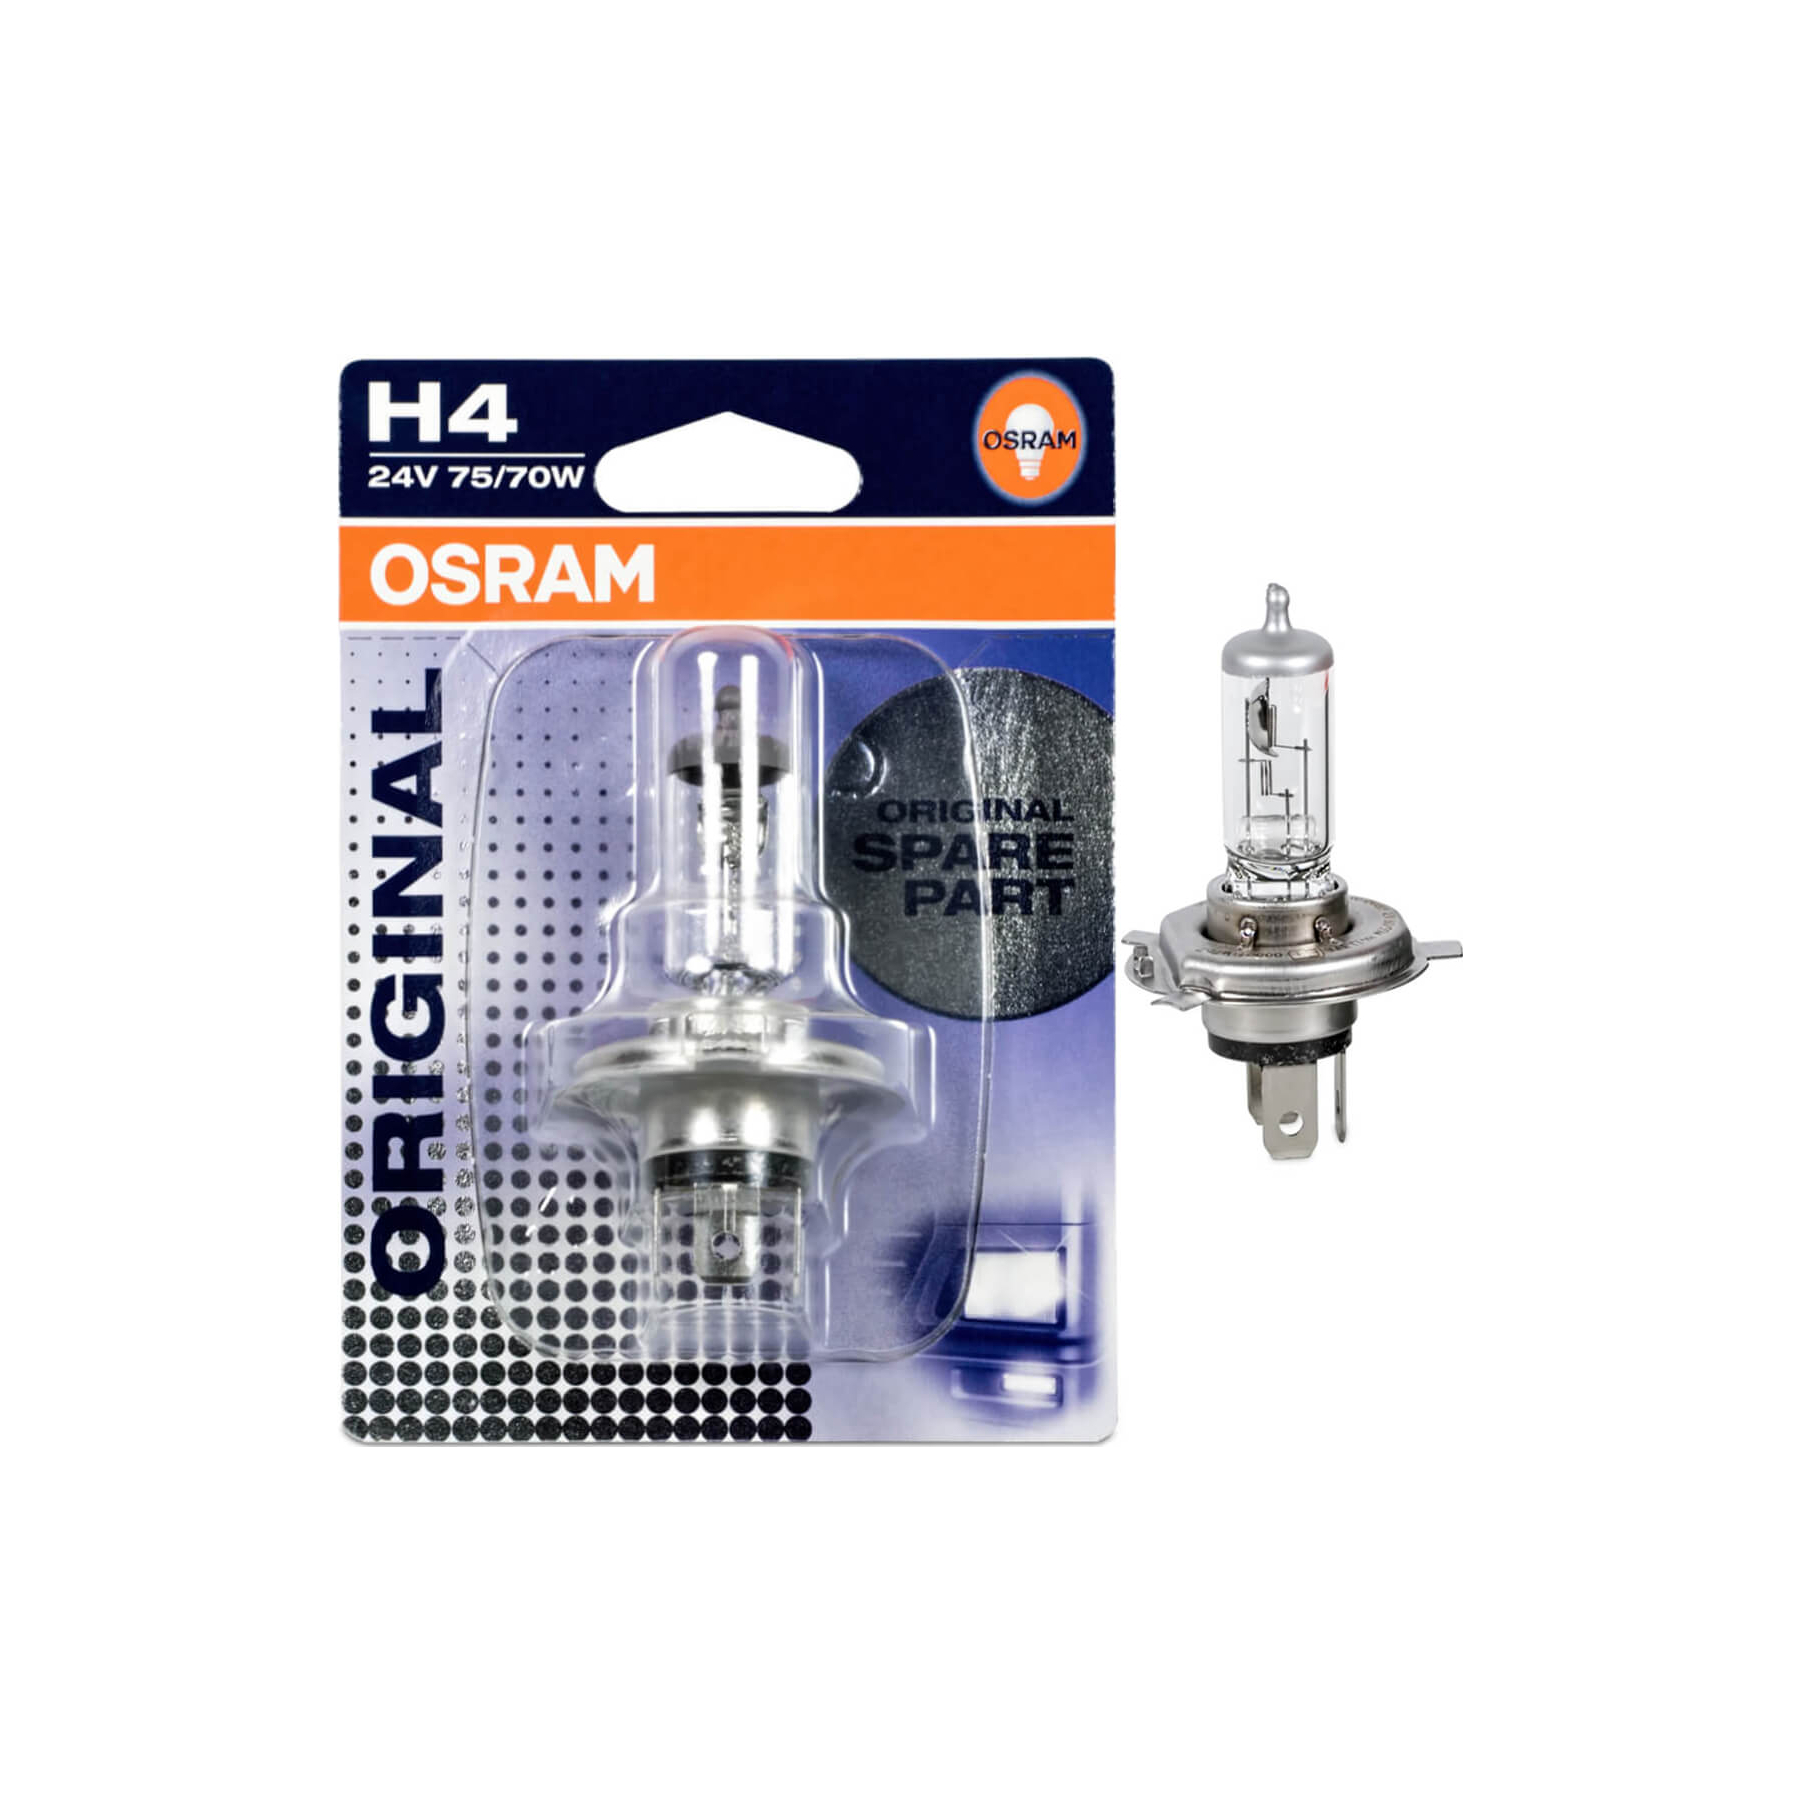 OSRAM H4 64196 24V 75/70W Original Truck Line Halogen Headlight Bulb –  BulbAmerica